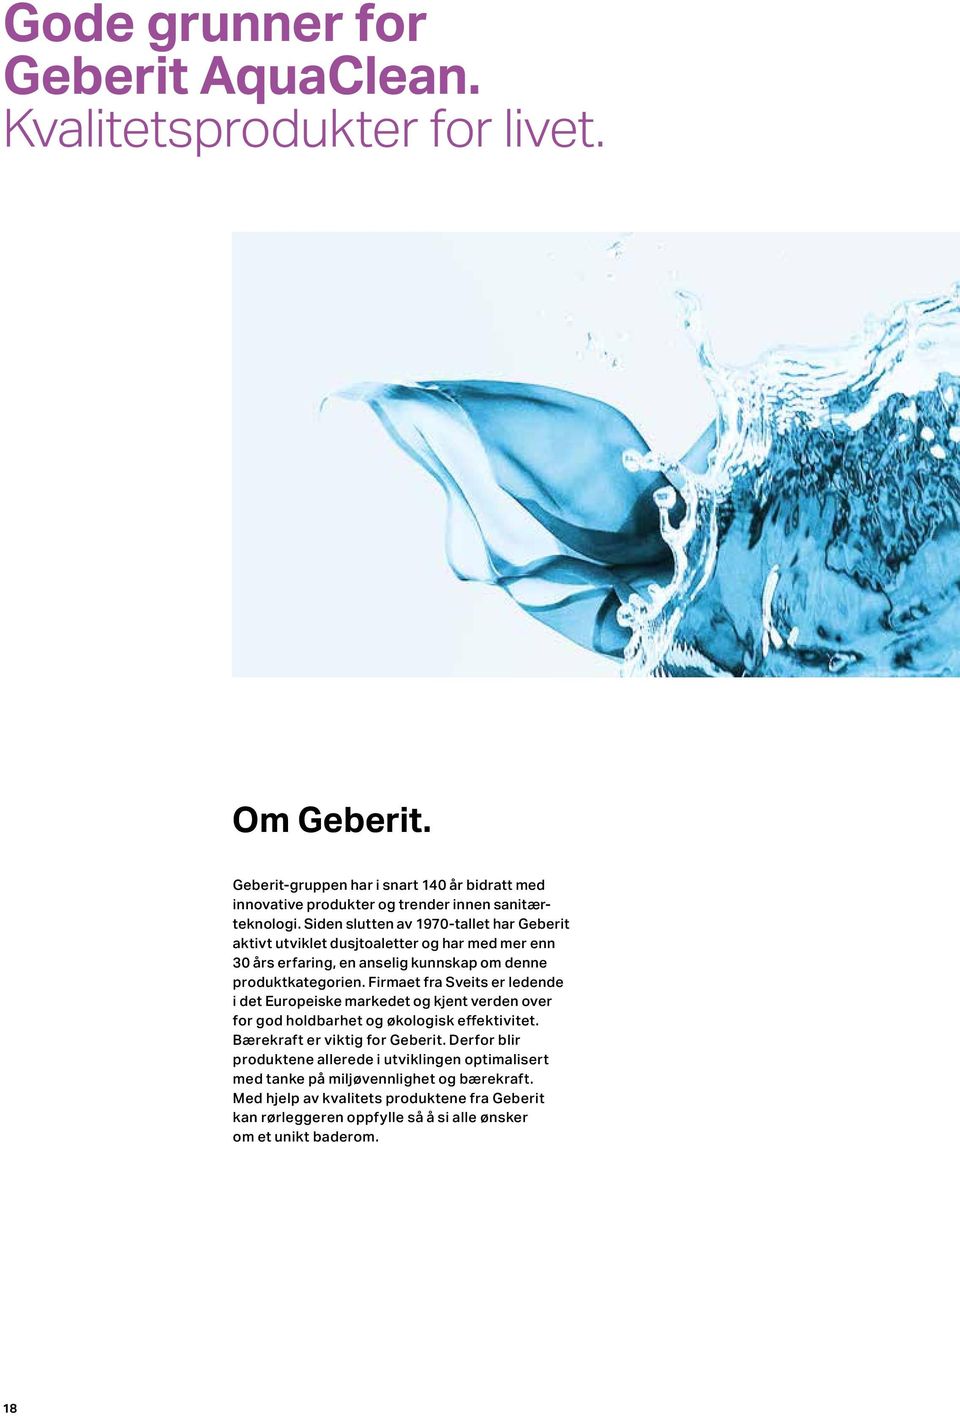 Siden slutten av 1970-tallet har Geberit aktivt utviklet dusjtoaletter og har med mer enn 30 års erfaring, en anselig kunnskap om denne produktkategorien.